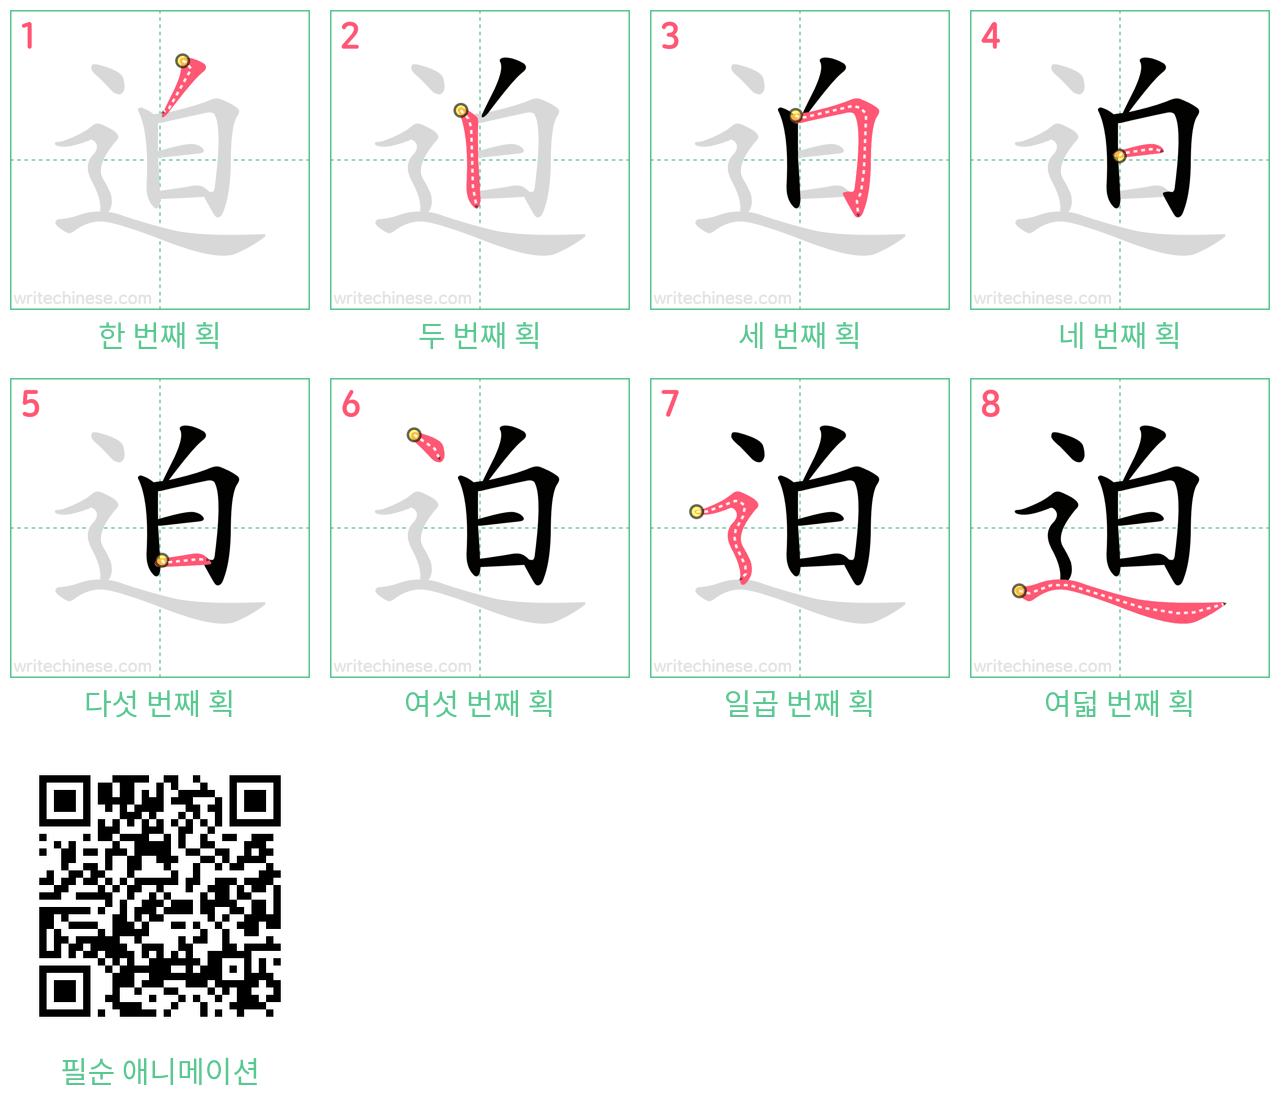 迫 step-by-step stroke order diagrams